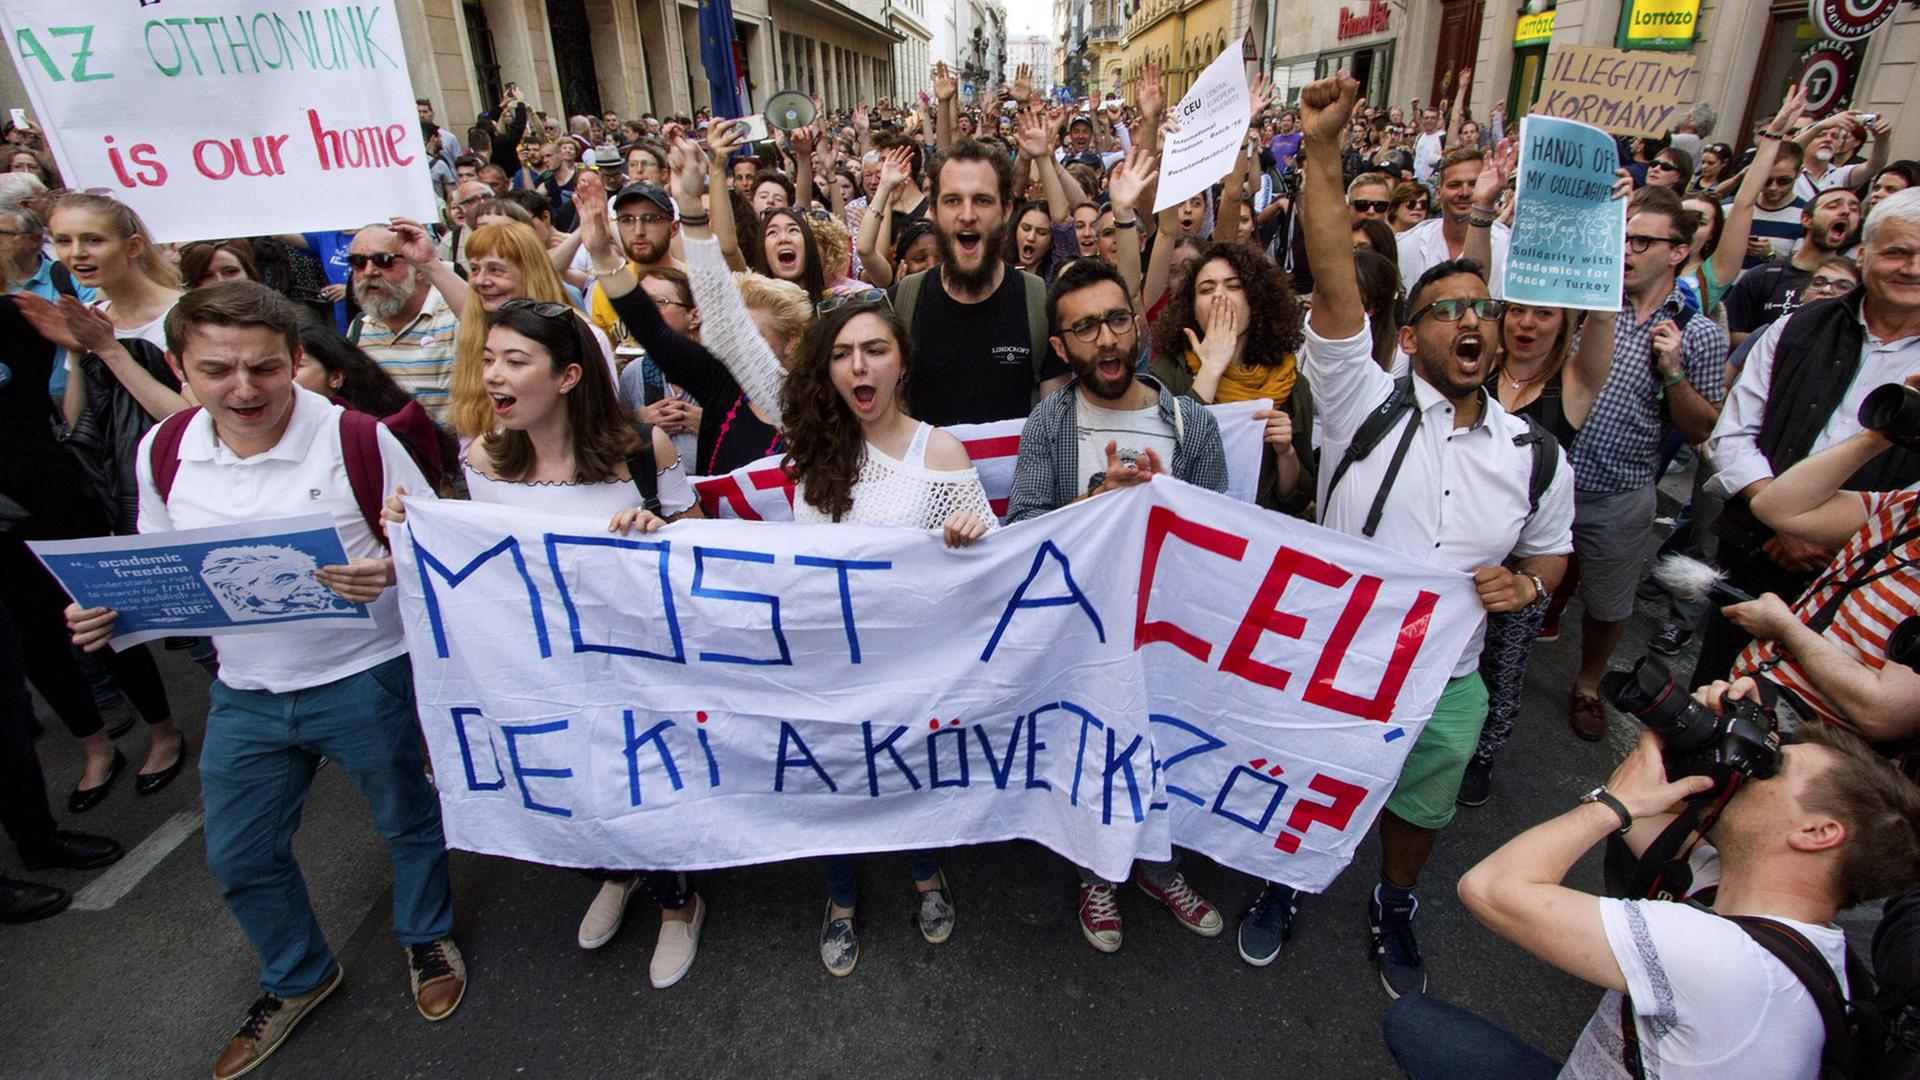 Proteste gegen den Angriff auf die CEU: Vielleicht hat Orban mit diesem Widerstand nicht gerechnet